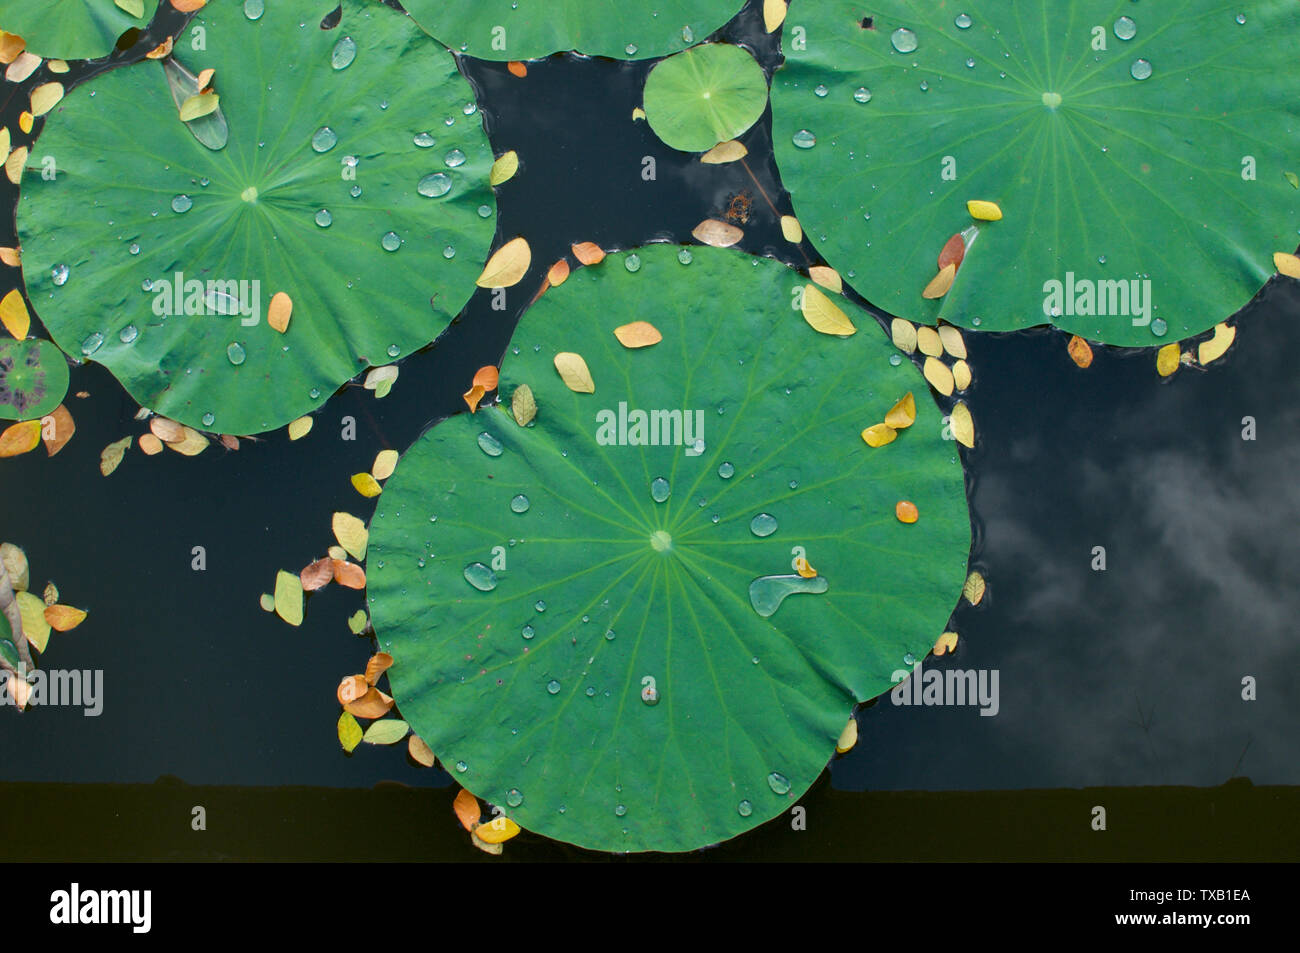 Bild von einigen Lotus Blatt mit Wassertropfen, die in einem Teich in Ubud, Bali - Indonesien Stockfoto